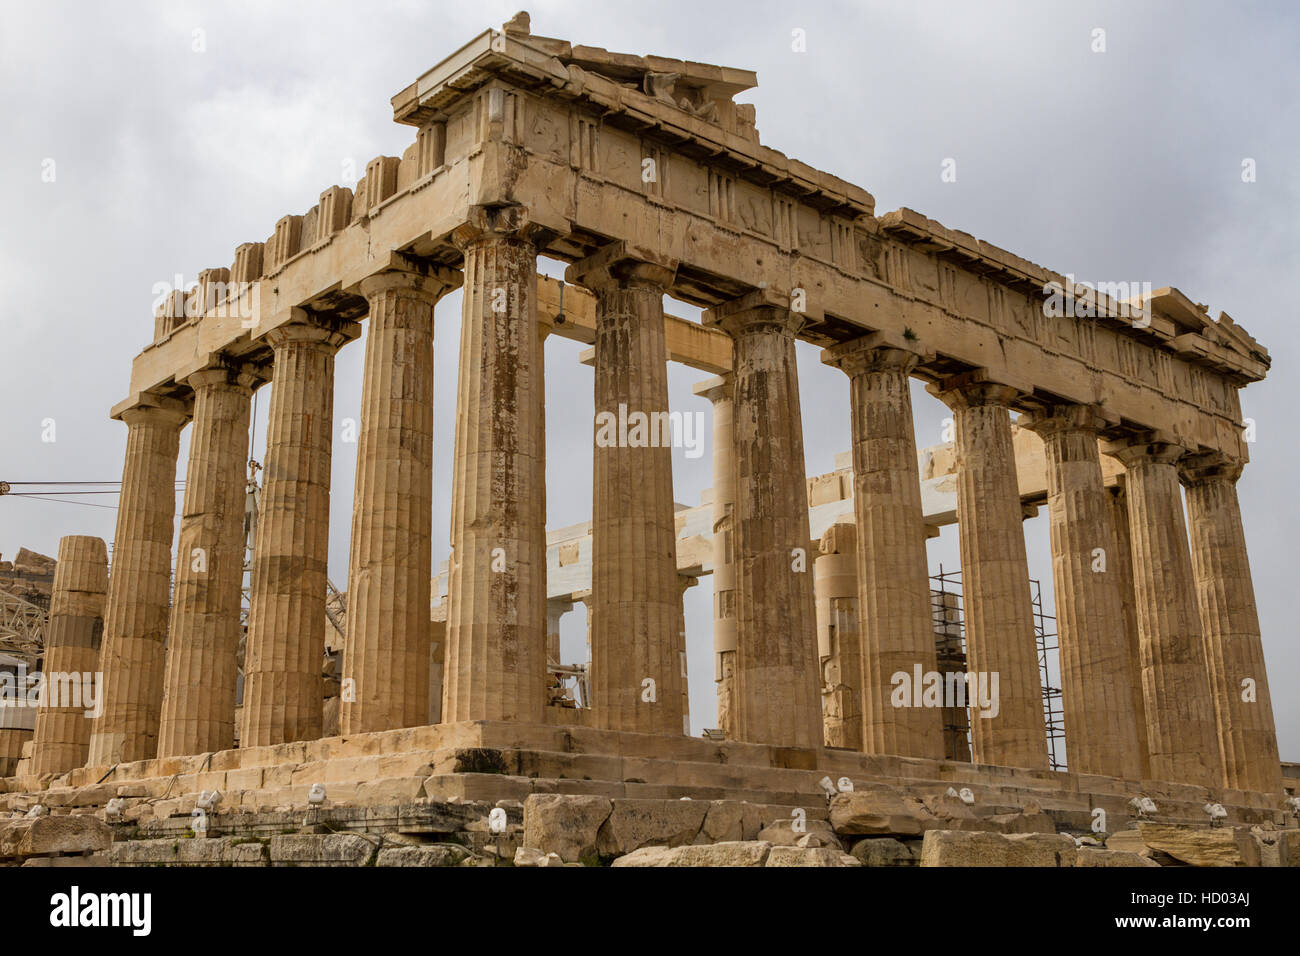 Athènes, Grèce - cariatides à l'Erechtheum du Parthénon à Athènes Grèce Erechtheion Banque D'Images